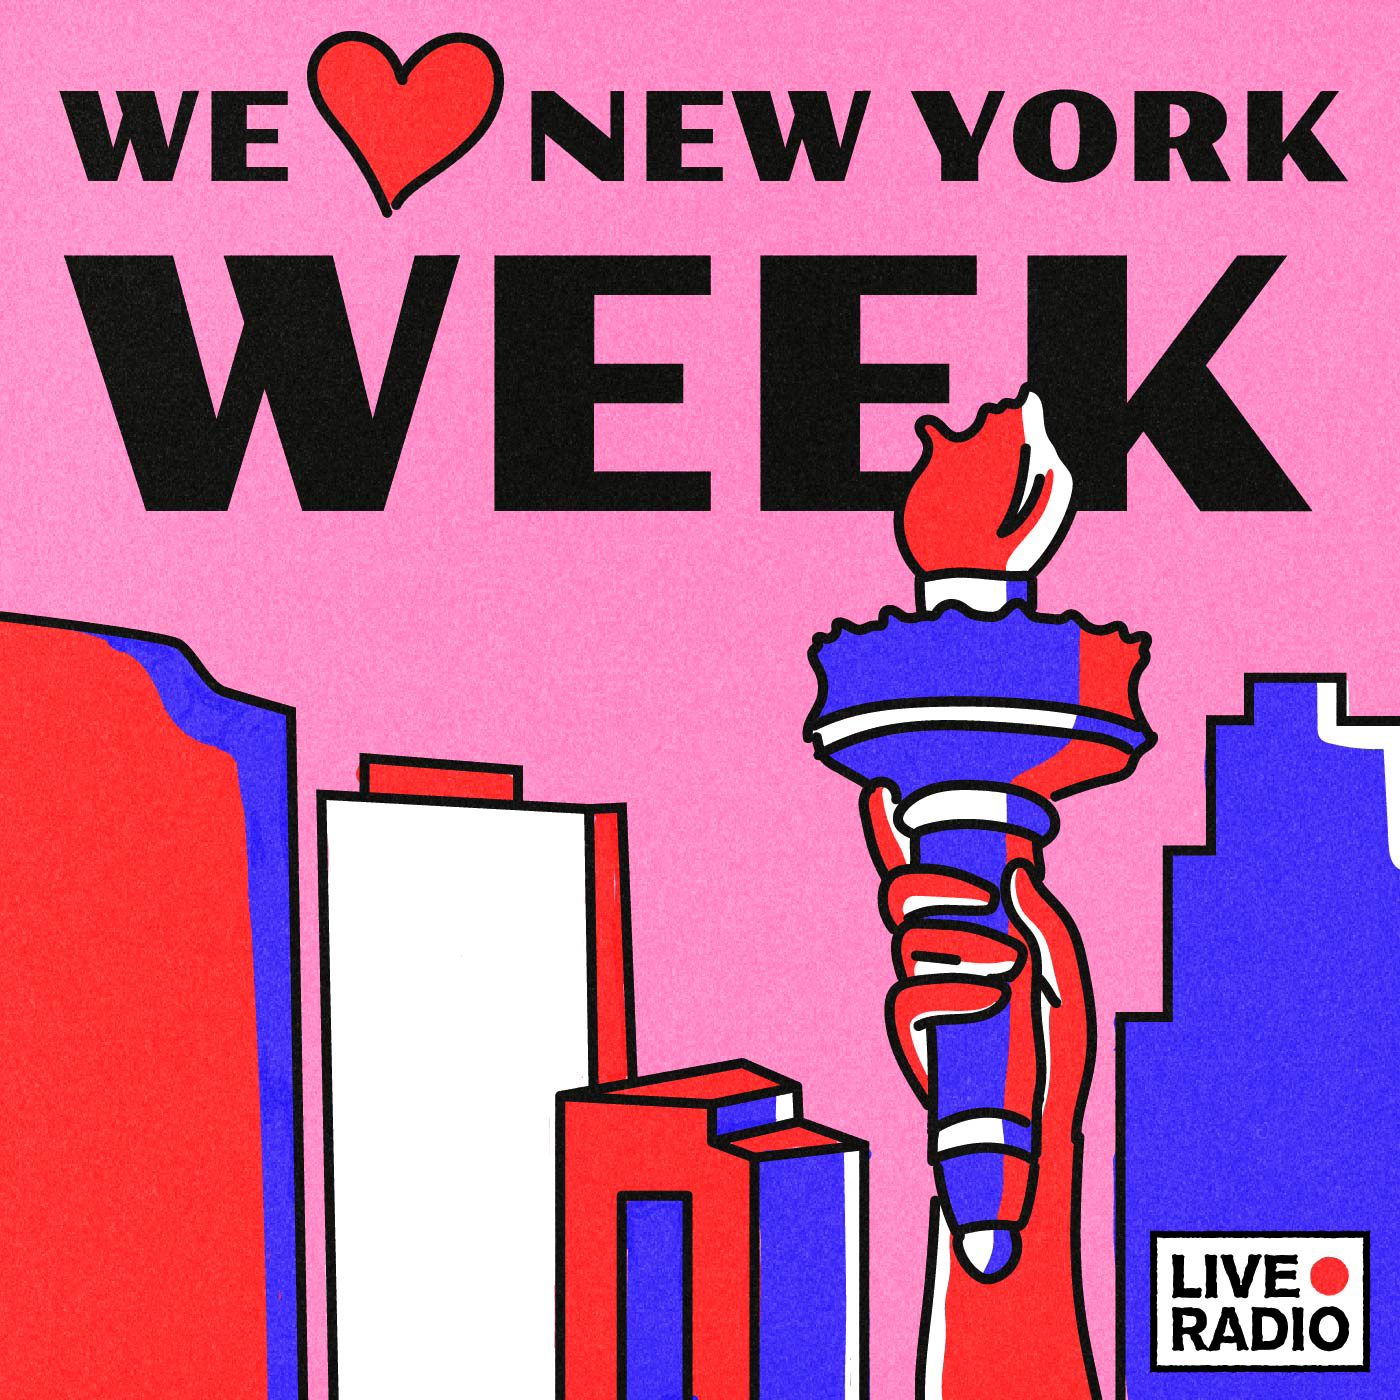 Artwork for I Heart New York Week